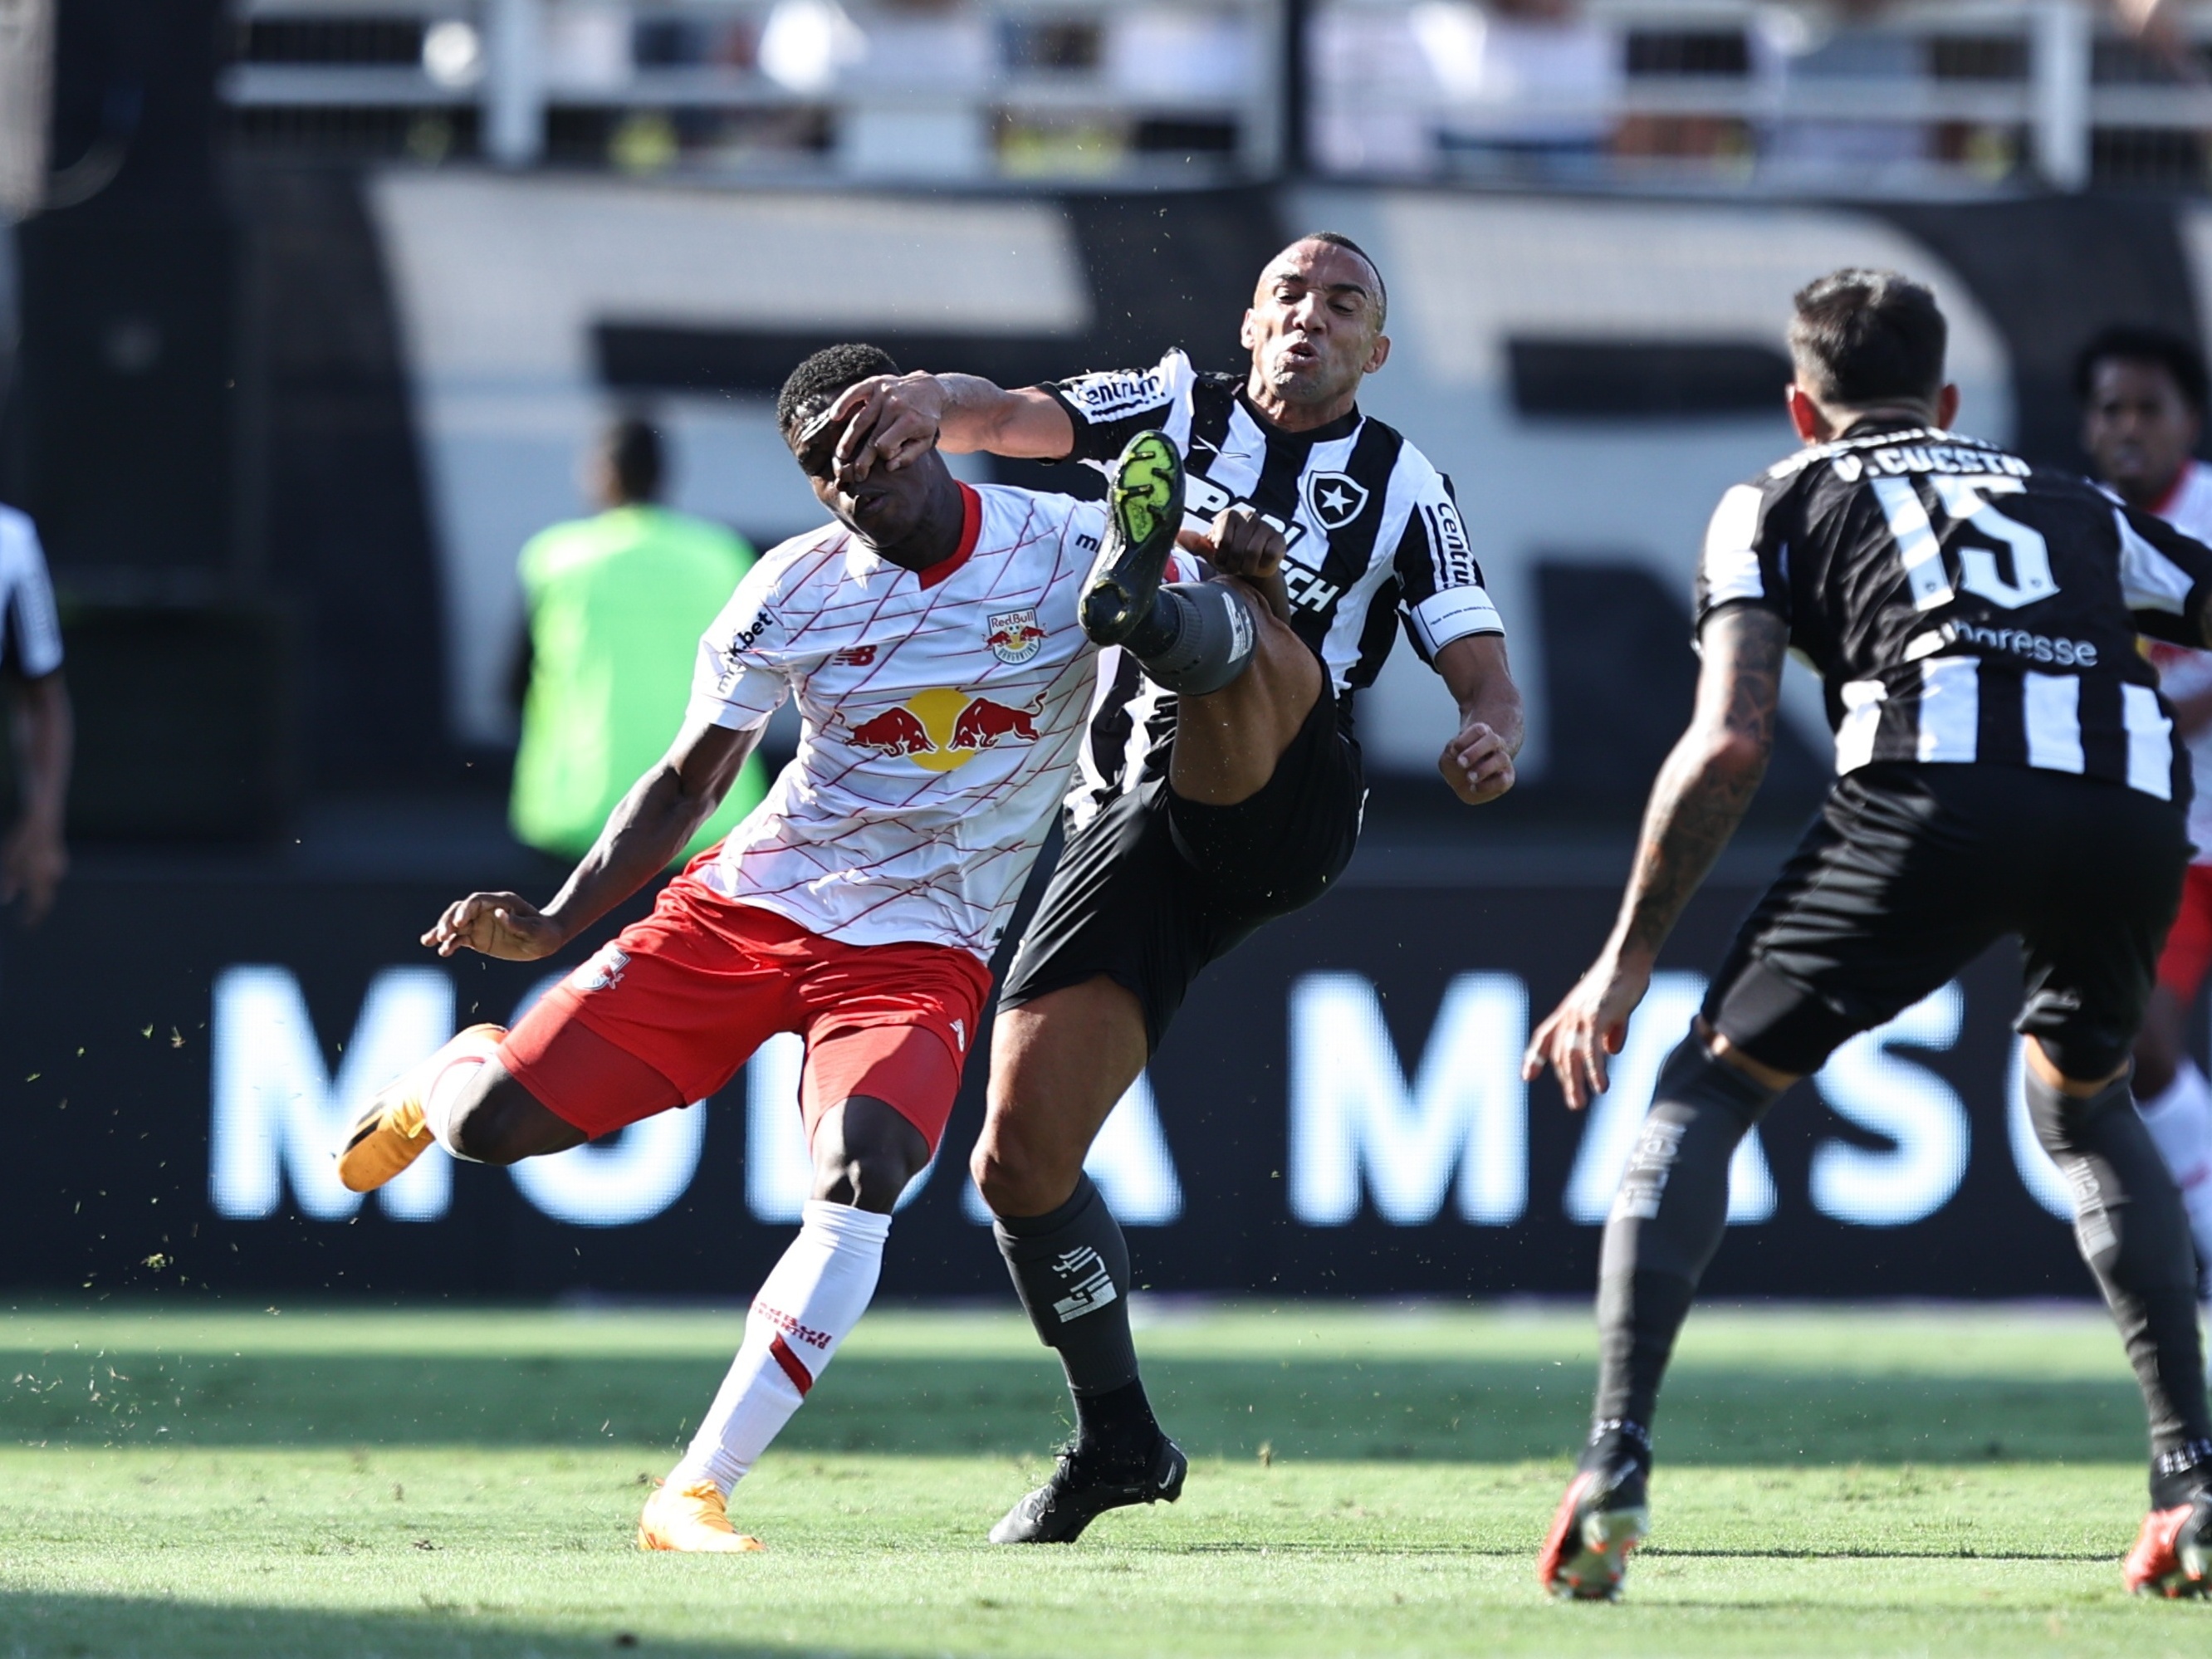 Botafogo visita o Red Bull Bragantino em jogo com clima de 'final